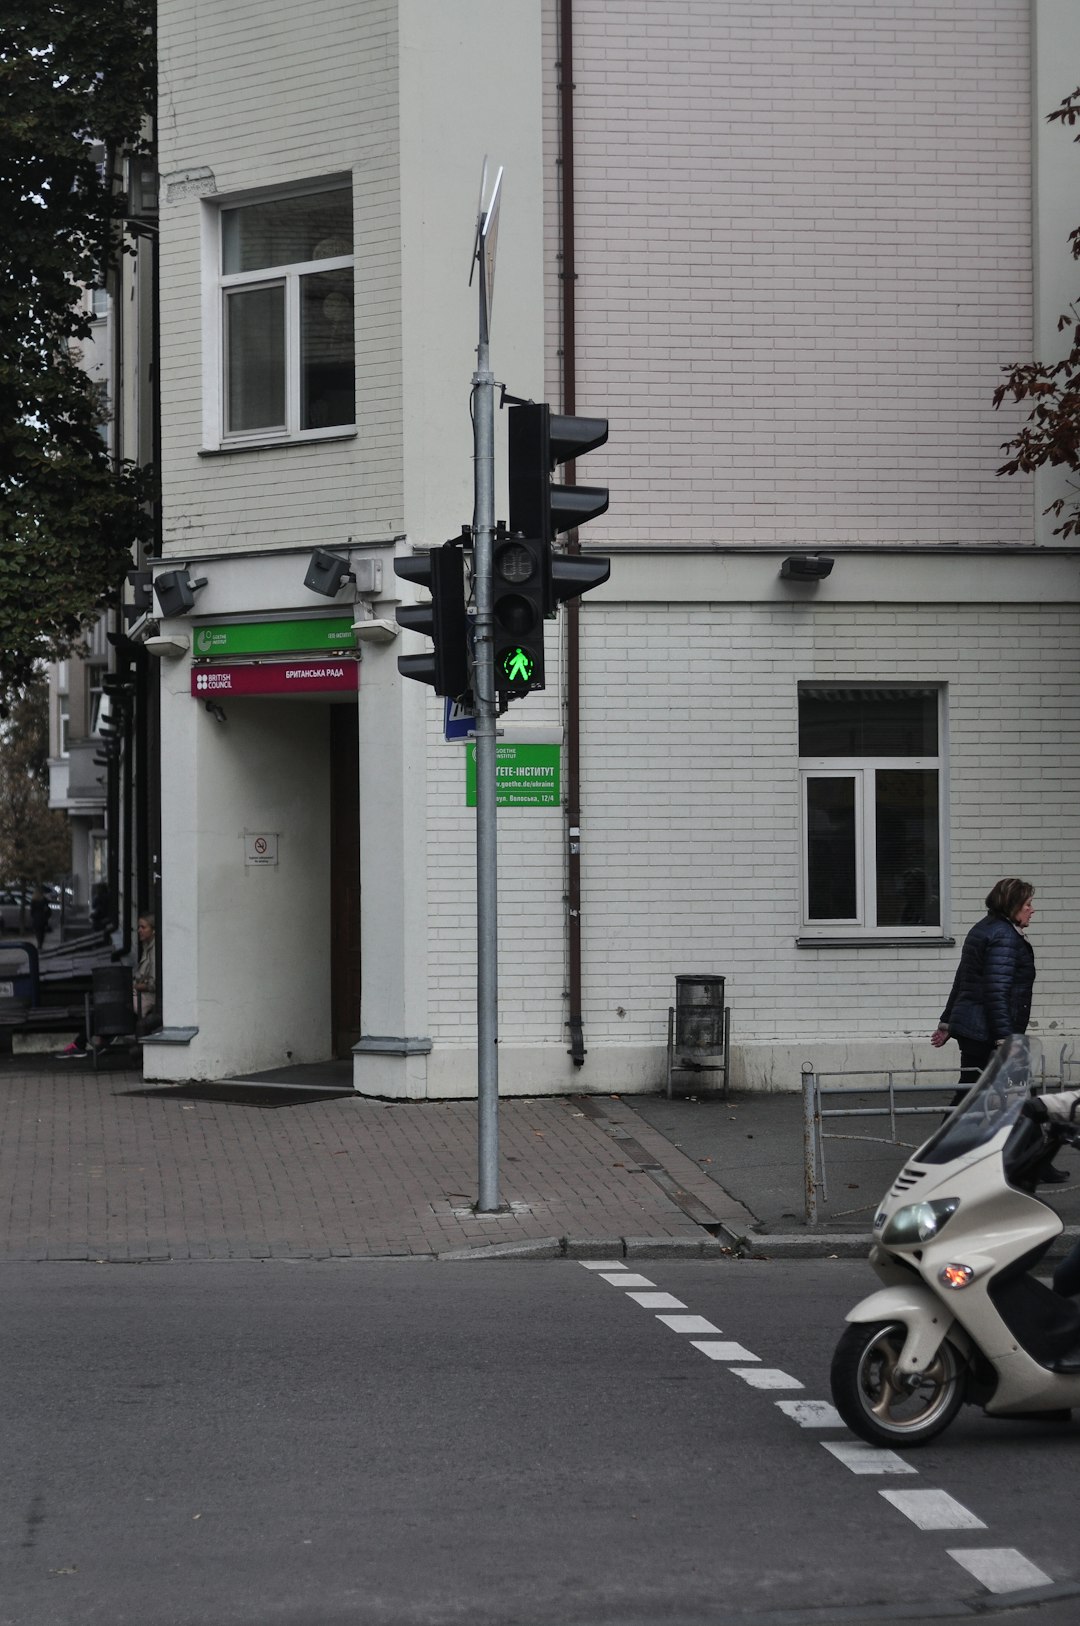 pedestrian light showing green for pedestrians